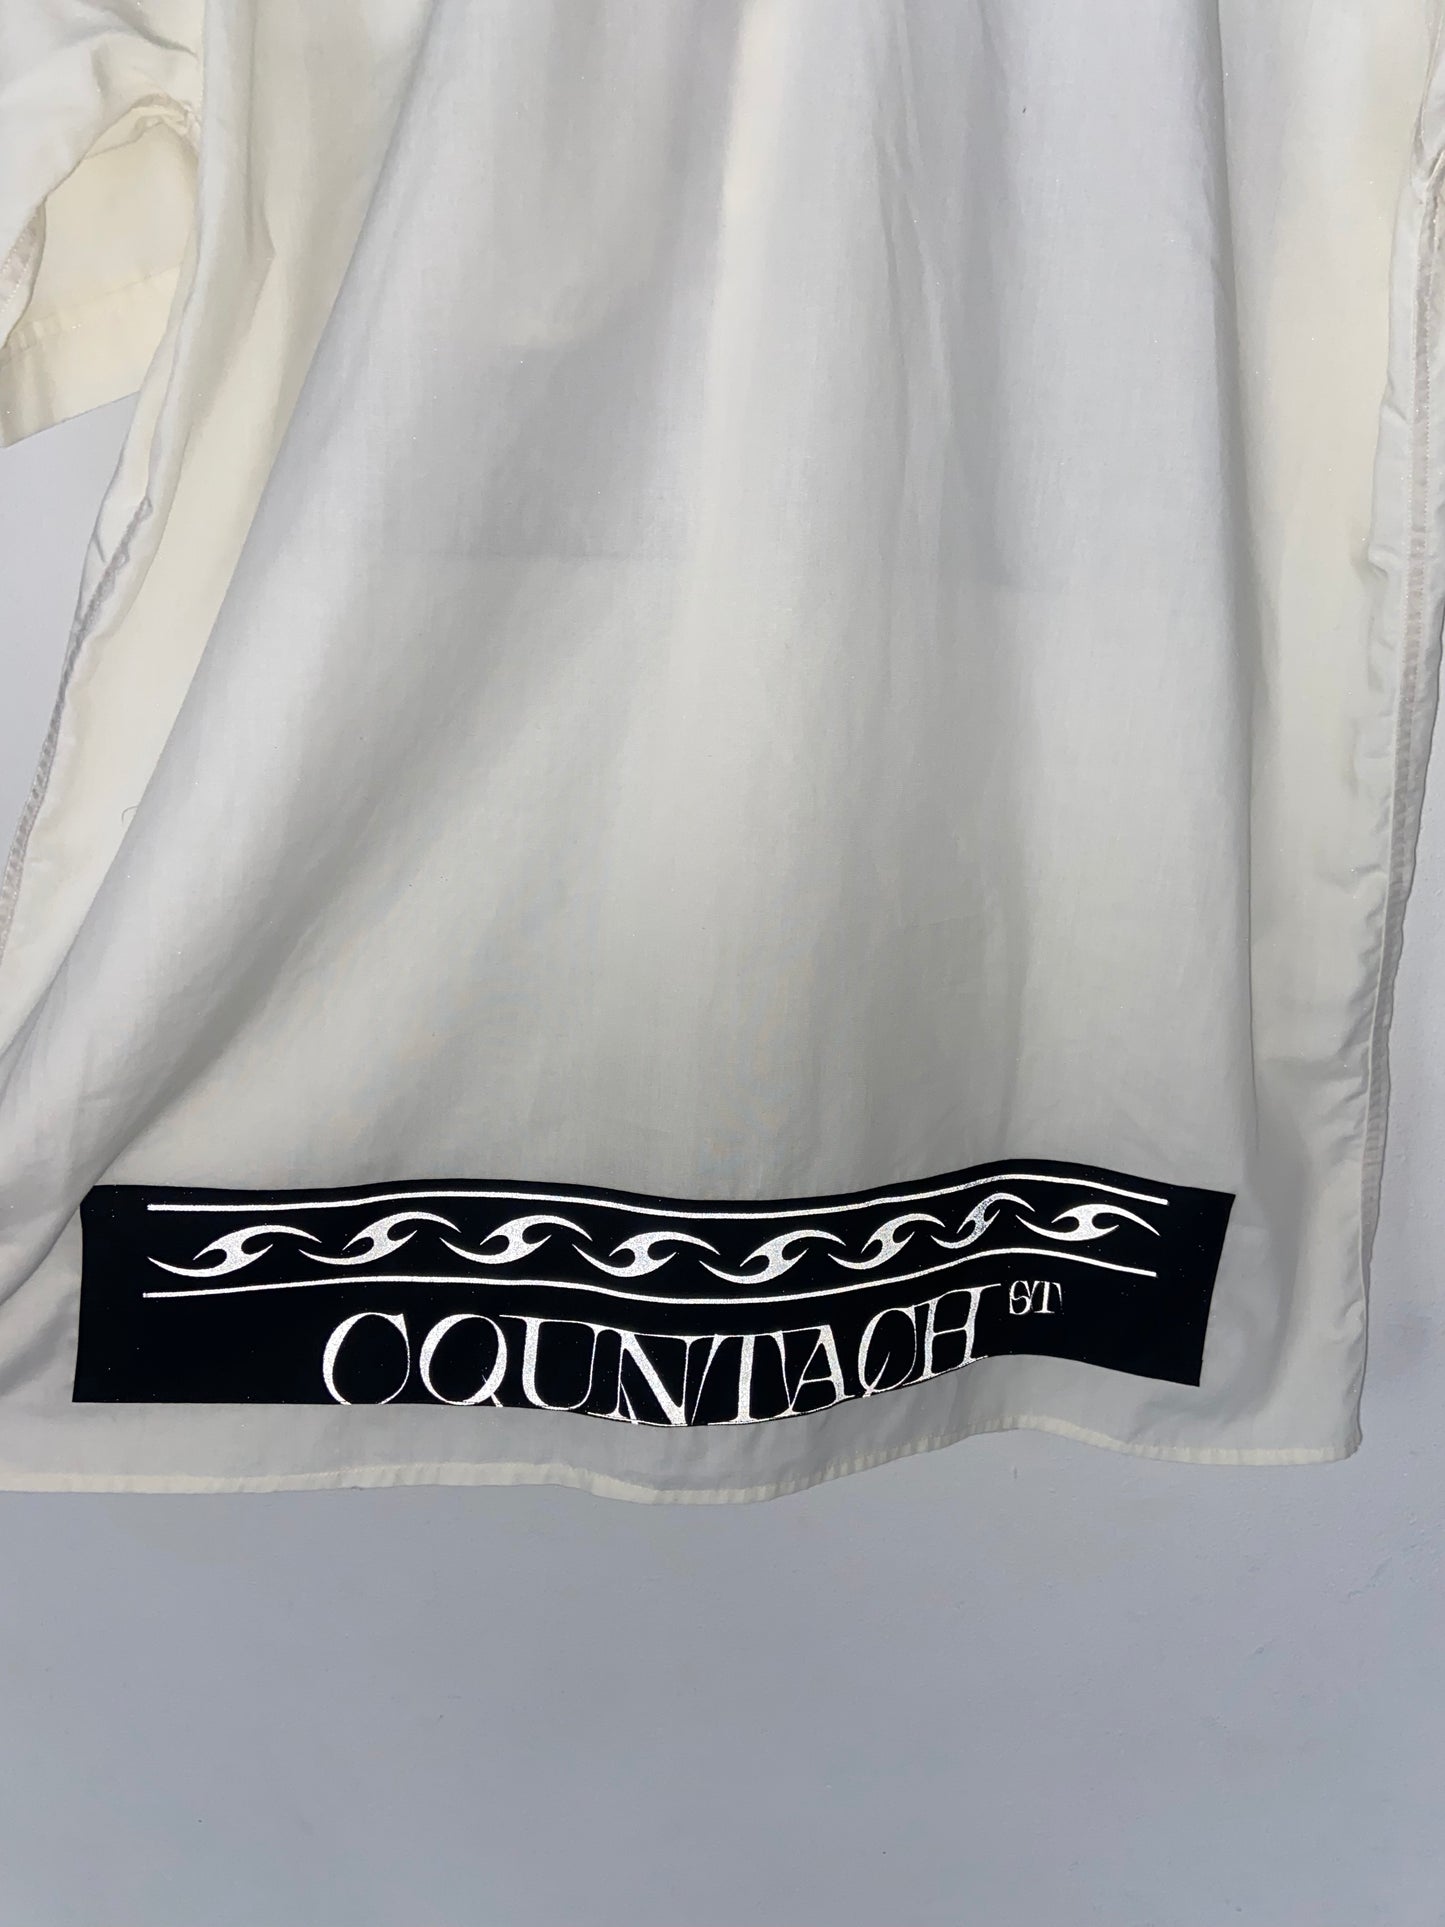 Countach Club Shirt 6/18